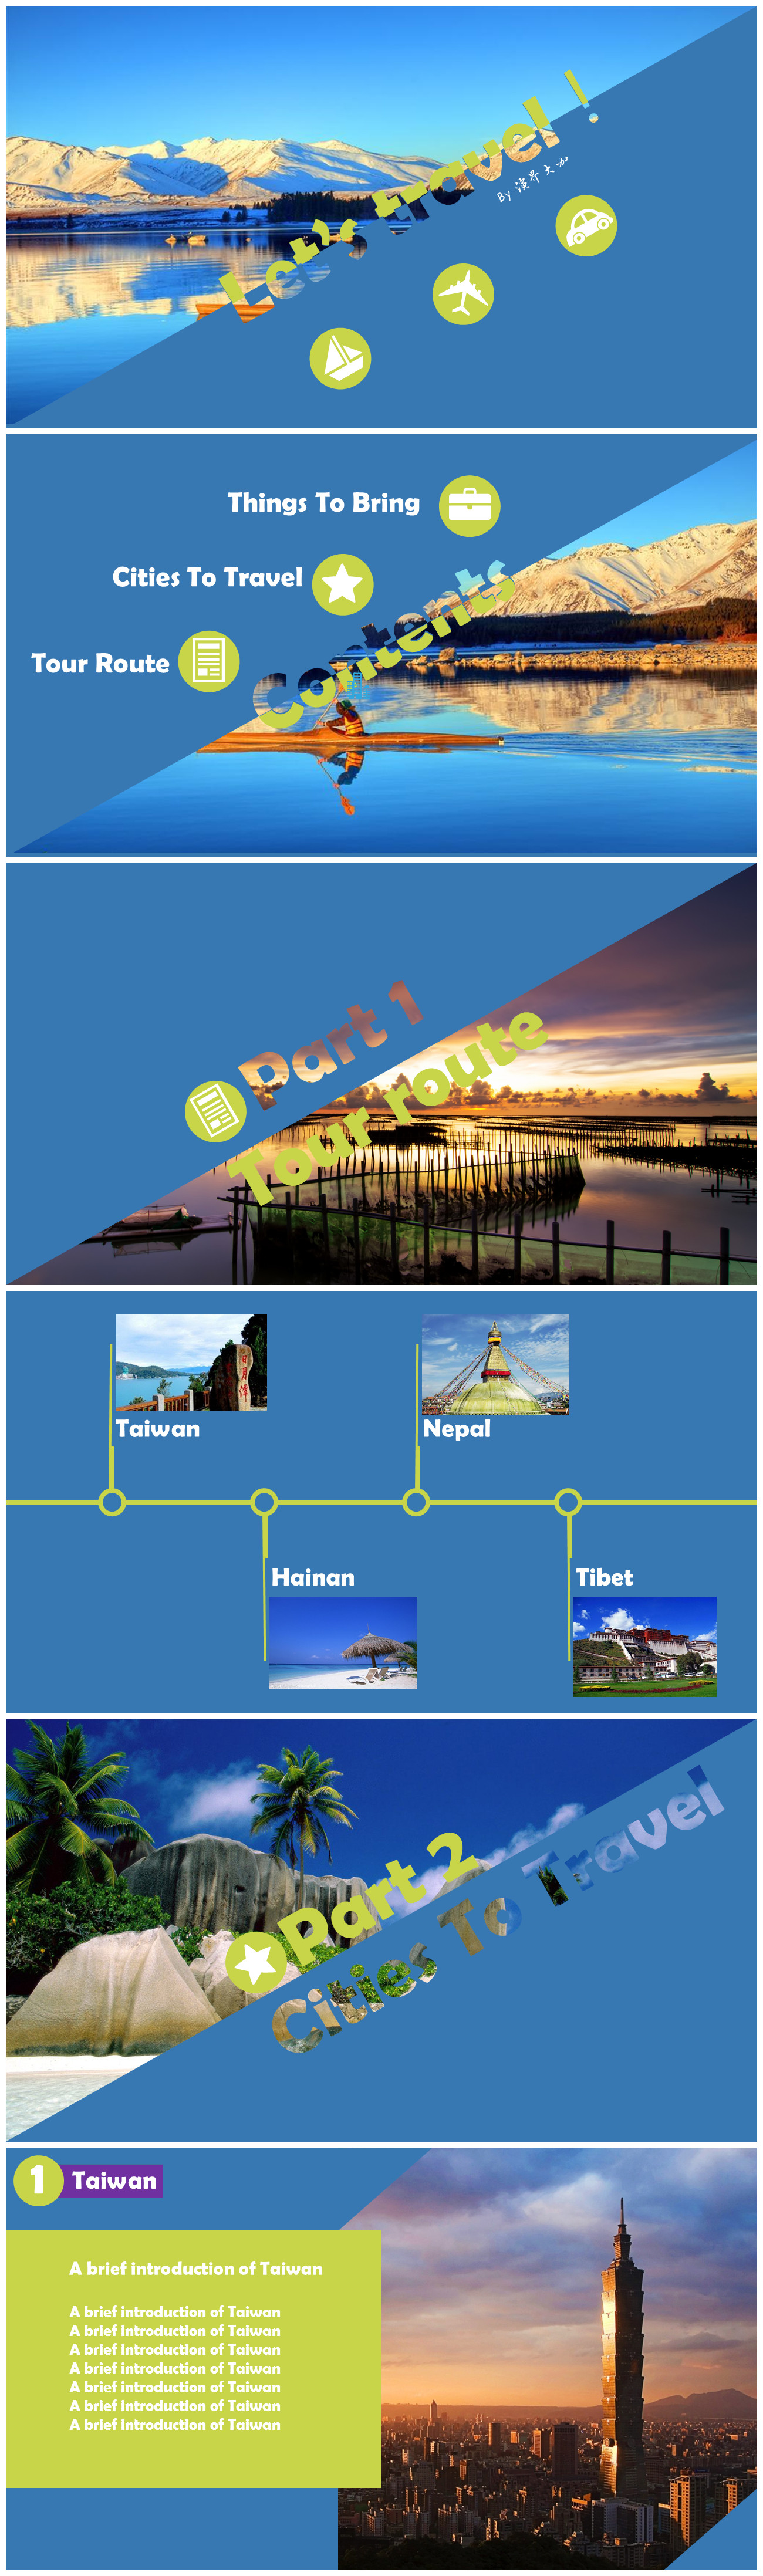 旅游景点行程介绍PPT模板-聚给网